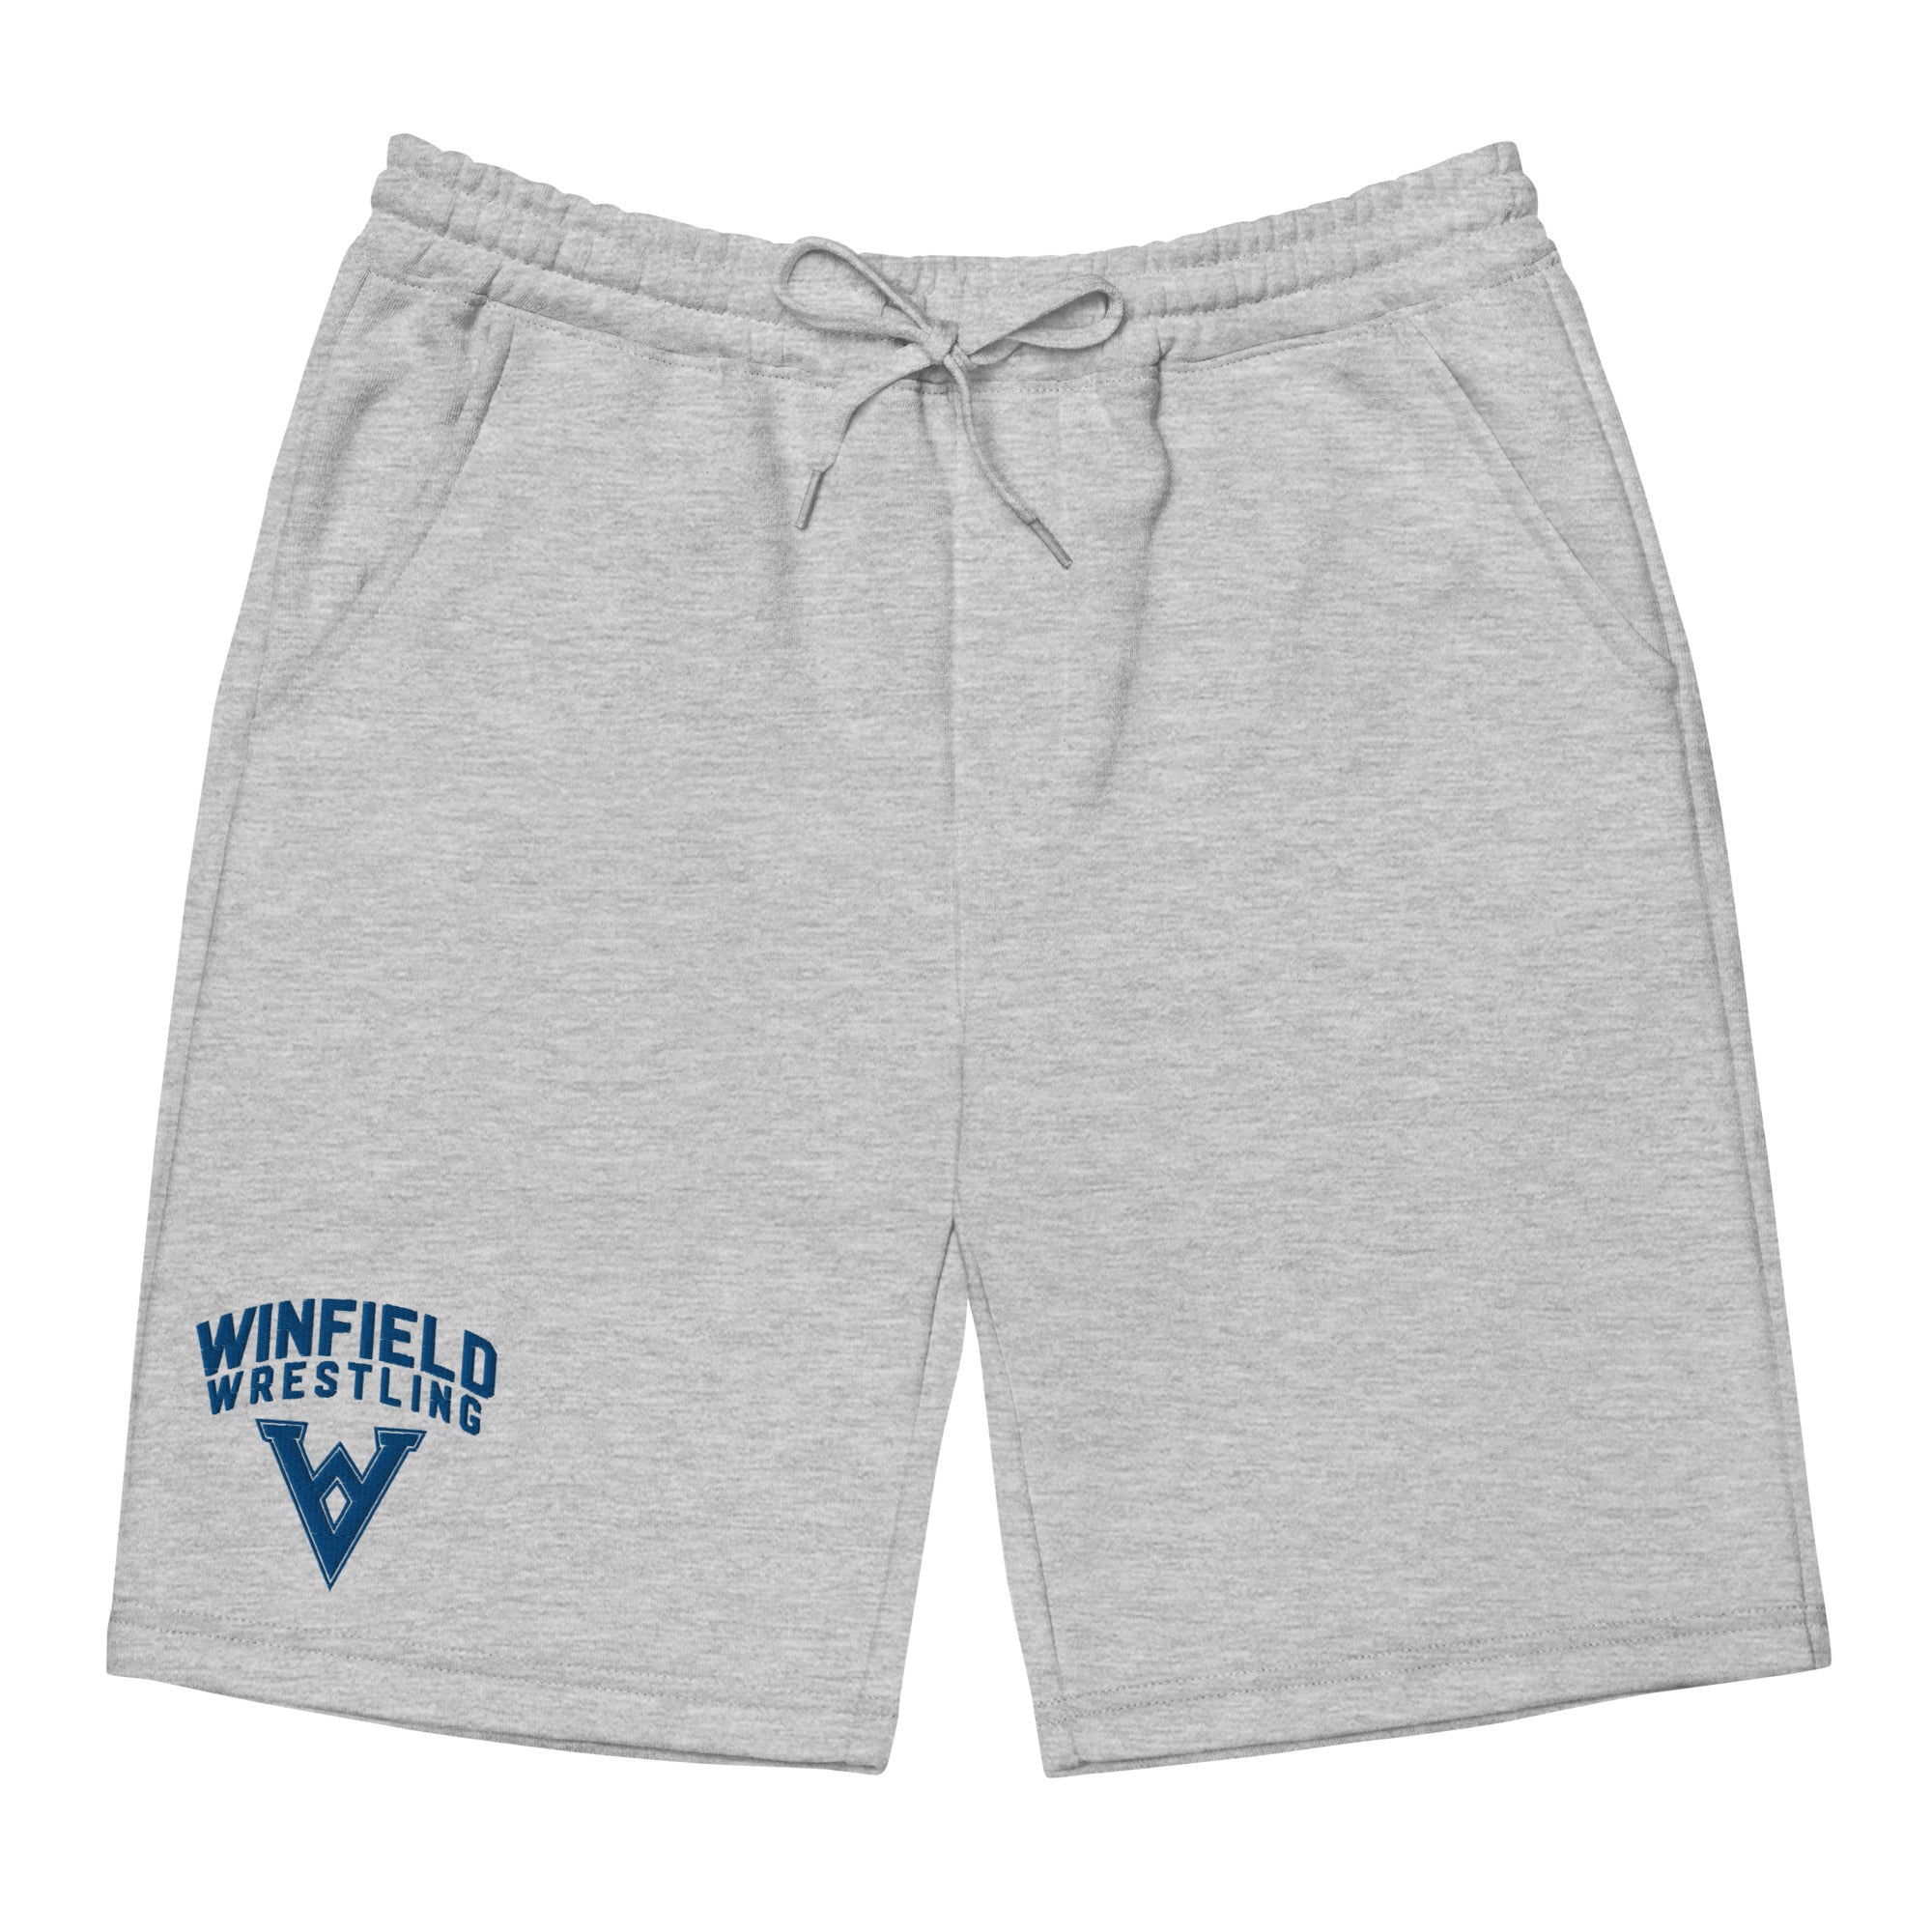 Winfield Wrestling Men's fleece shorts